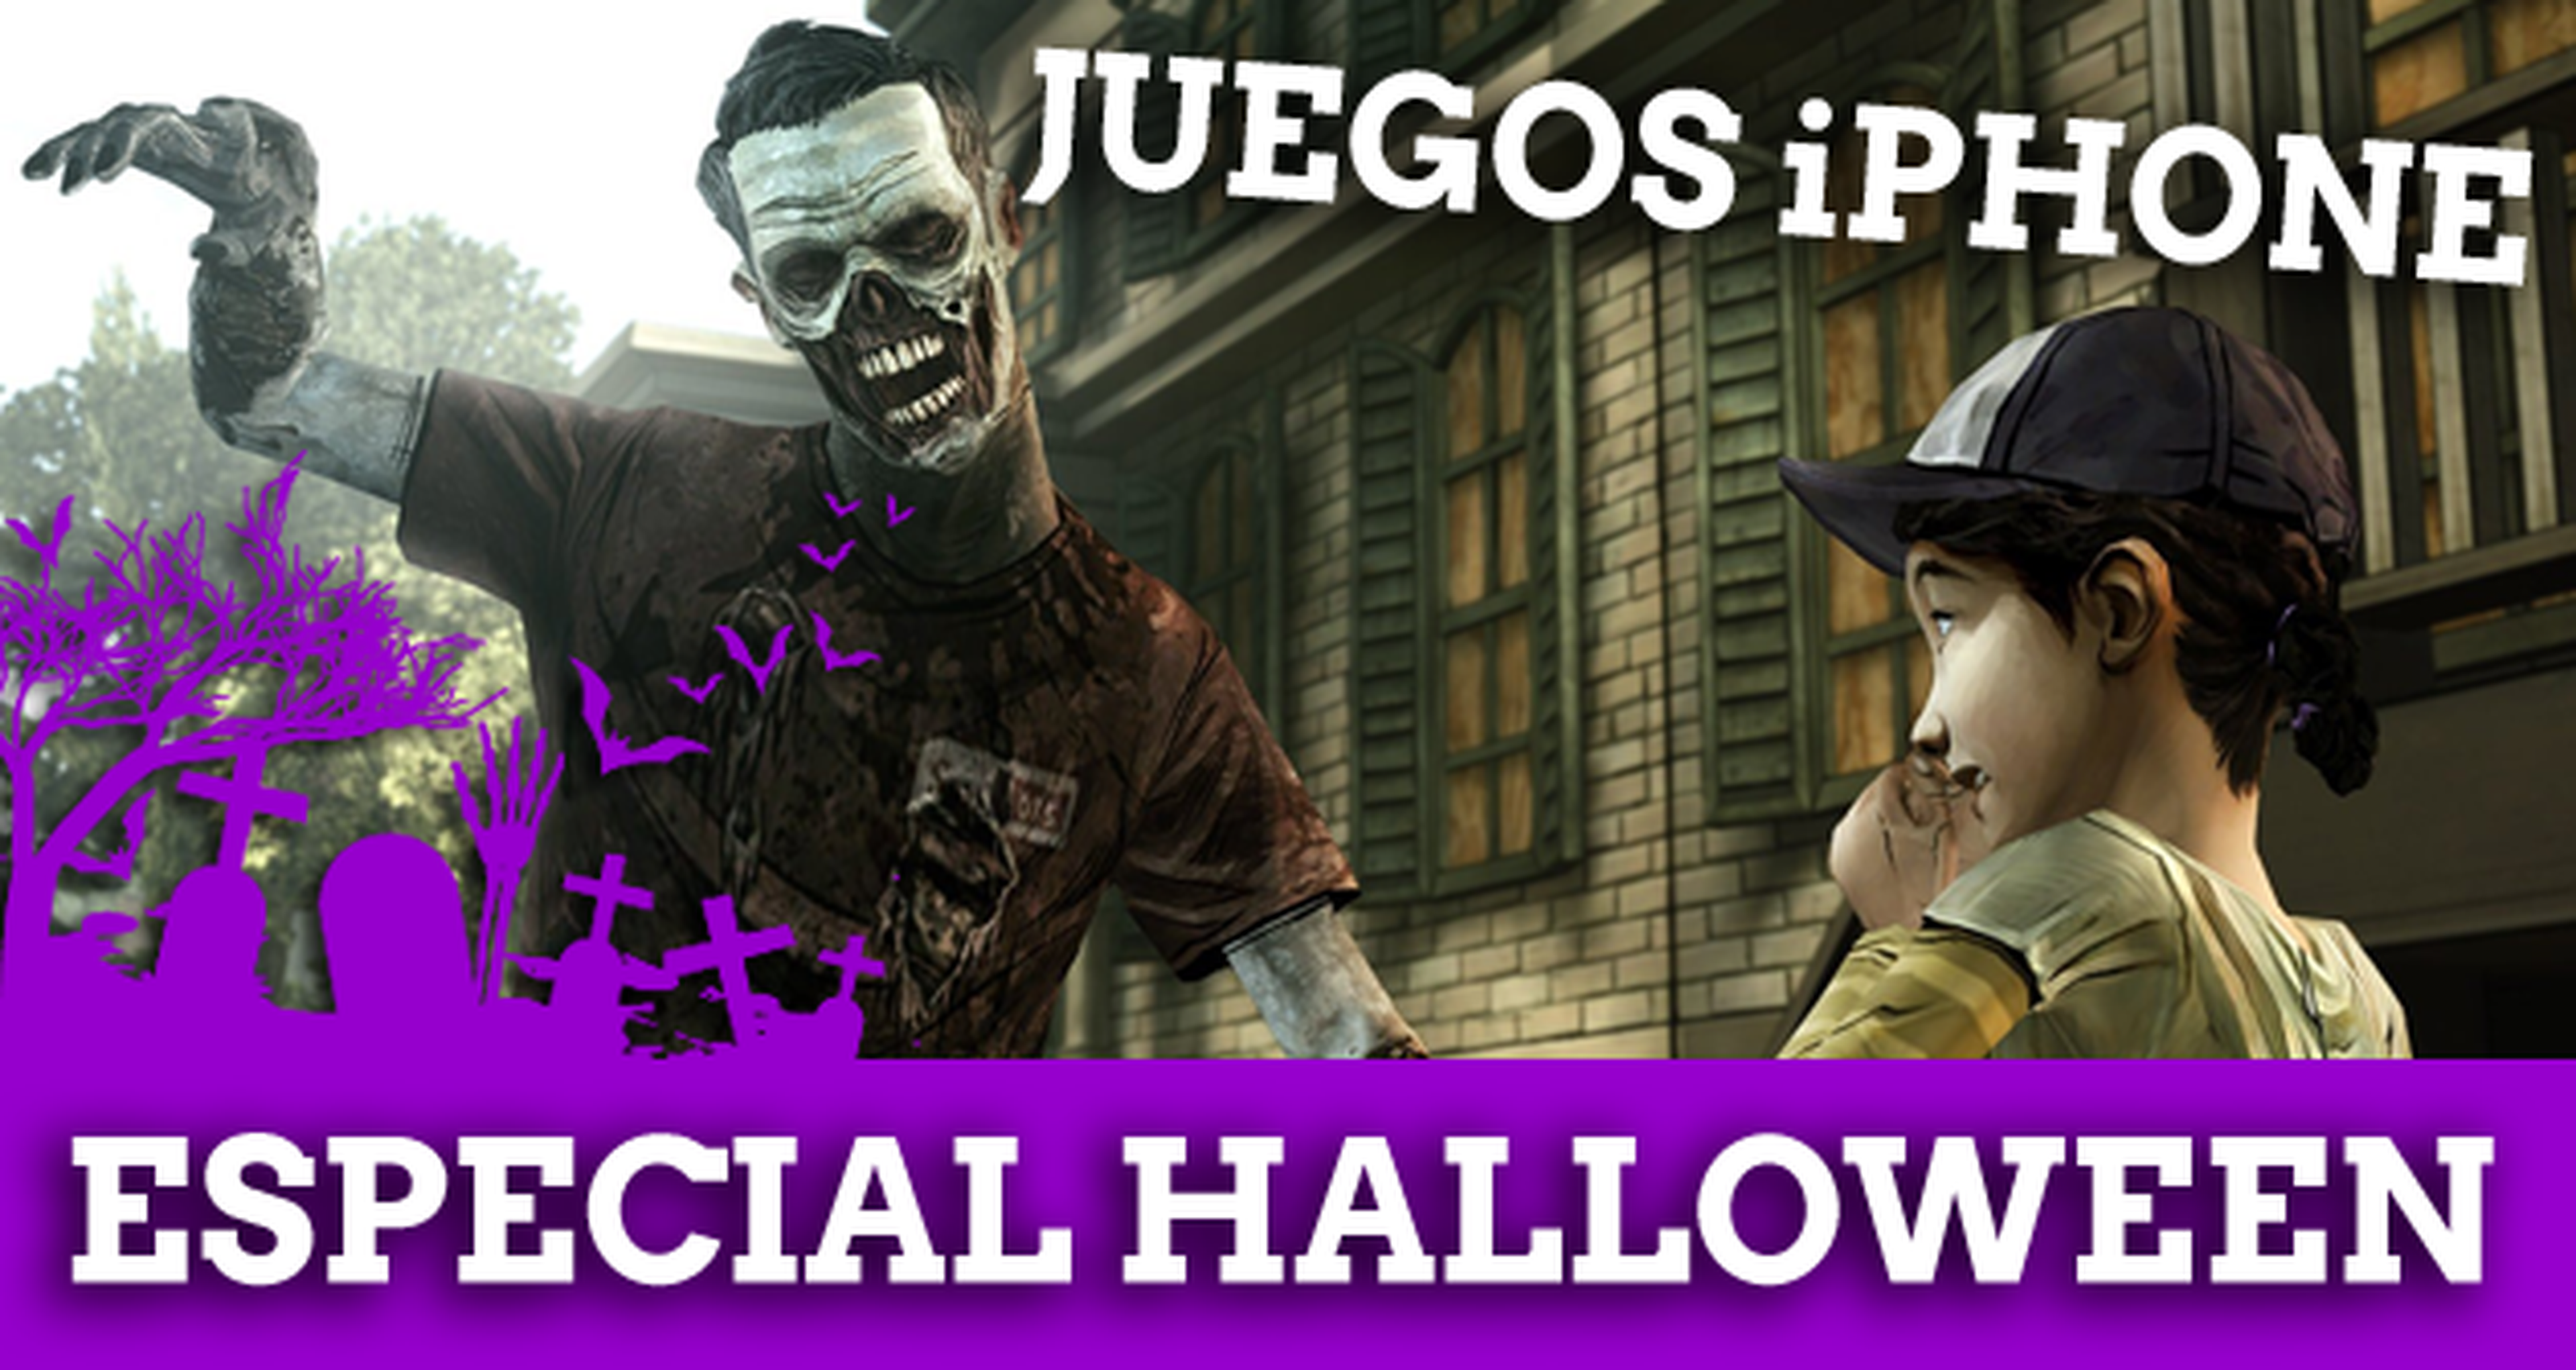 Especial Halloween: Los mejores juegos de terror de iPhone y iPad